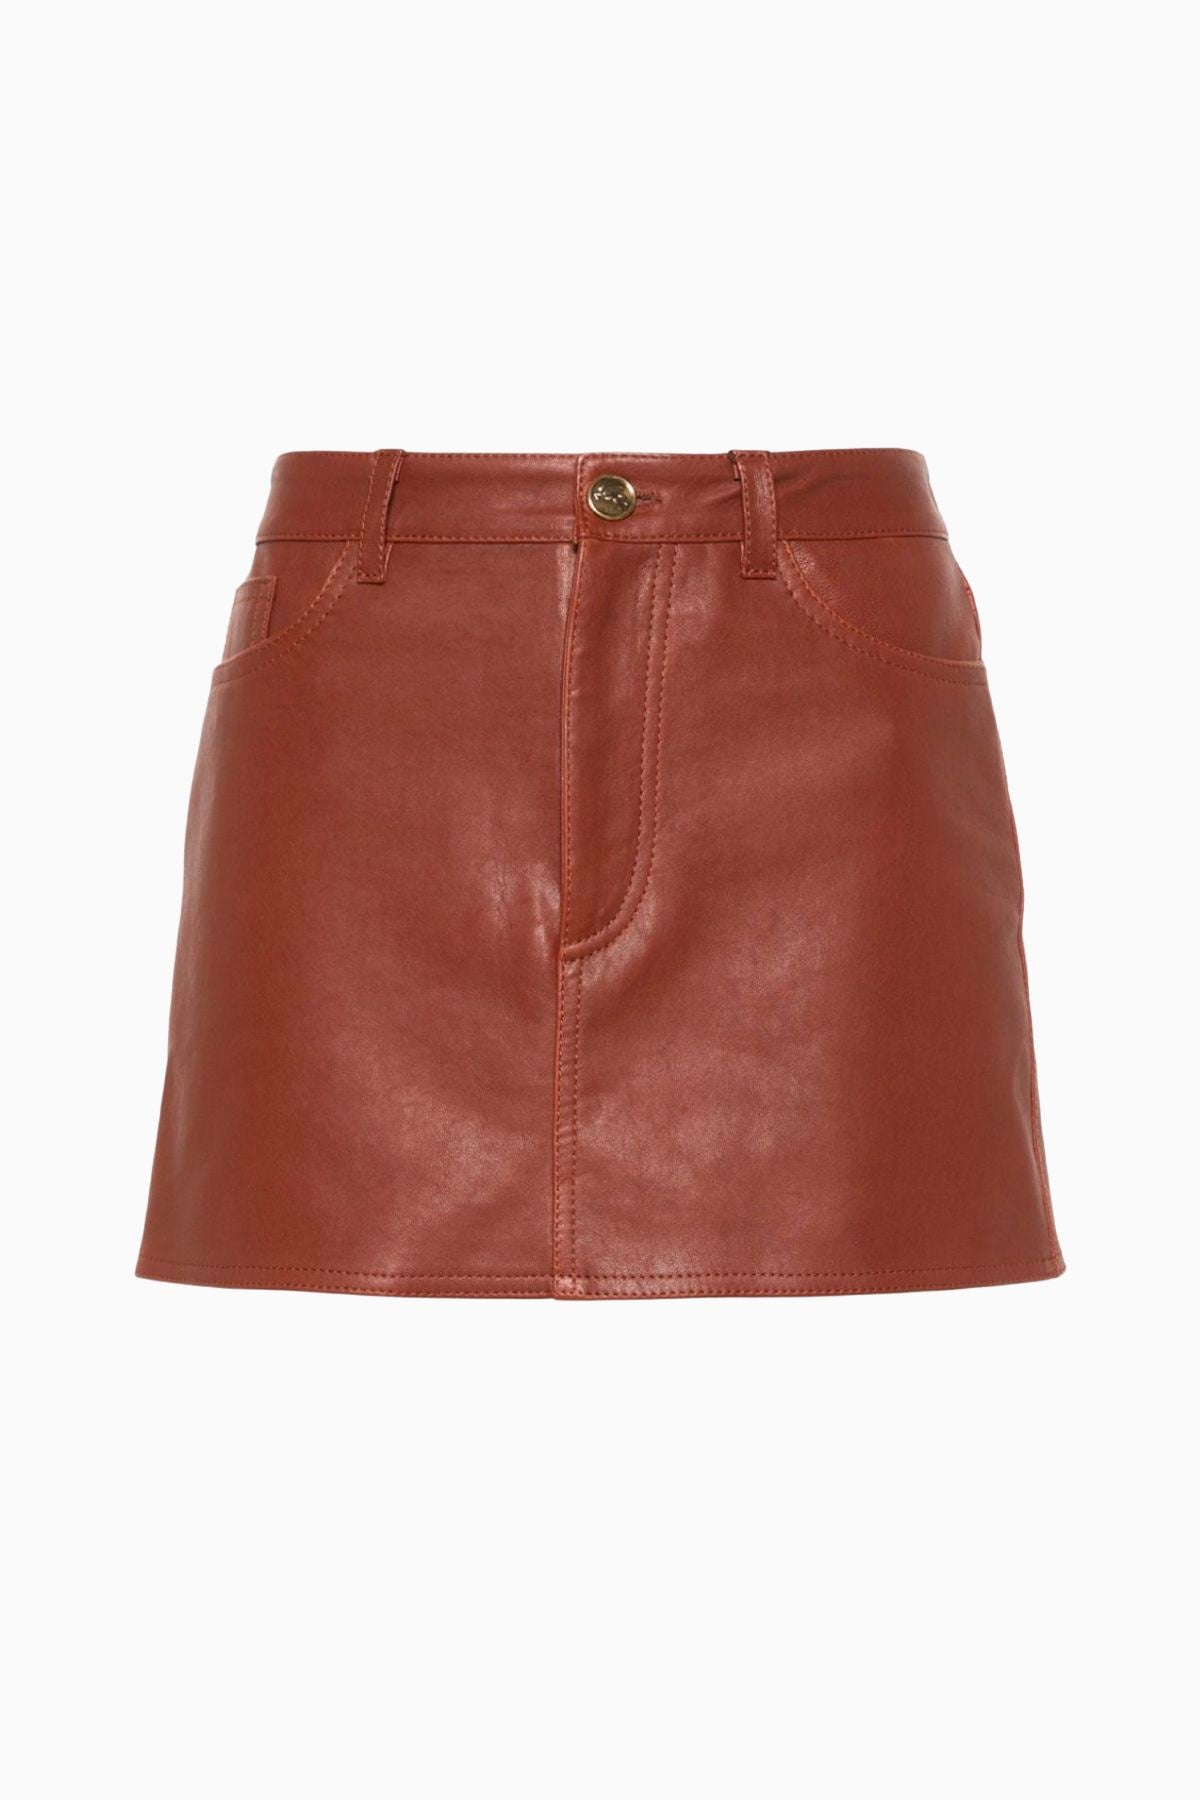 Etro Mini Leather Skirt - Brown